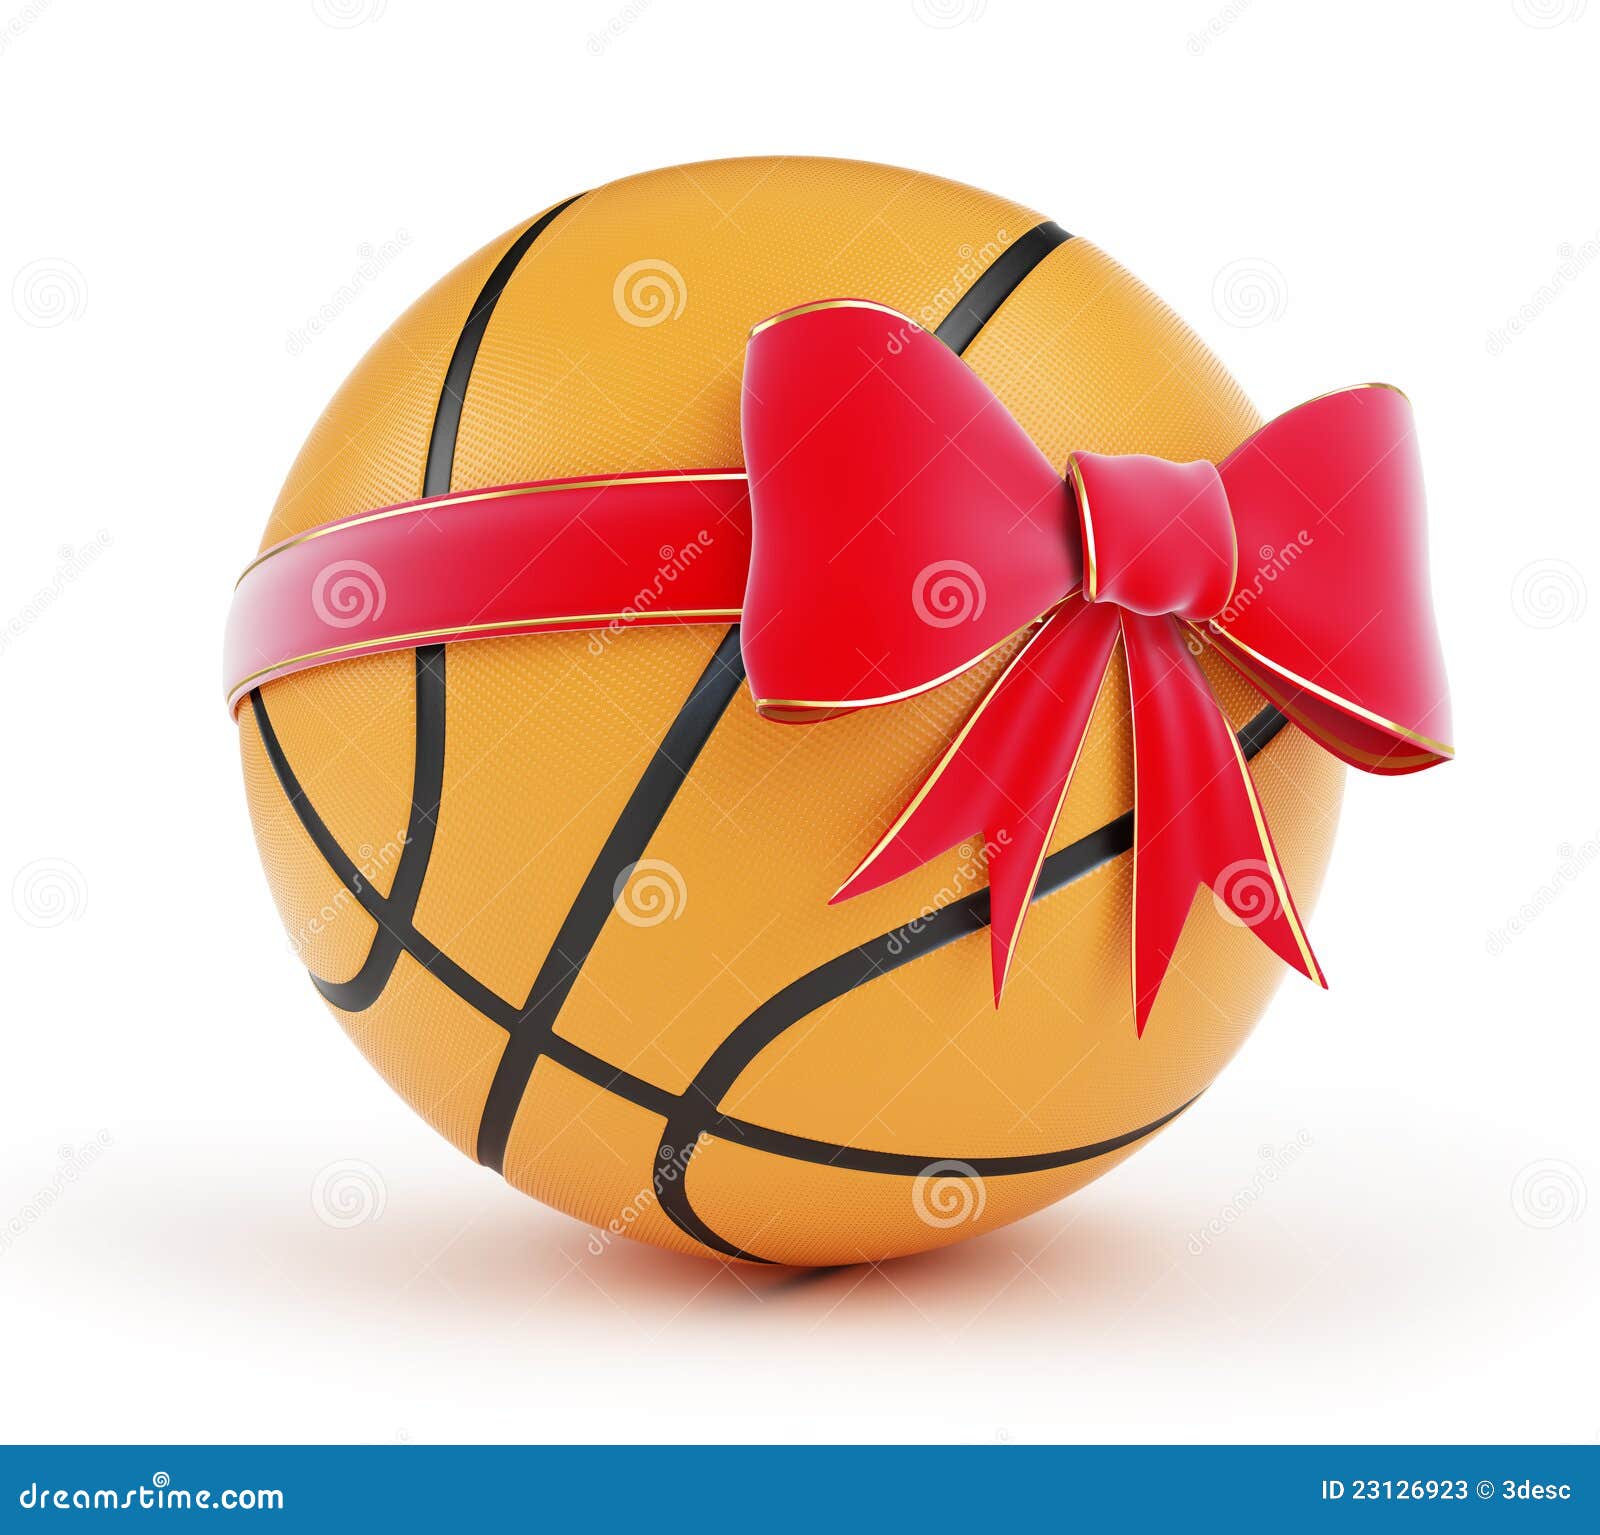 Cadeau ballon de basket ball